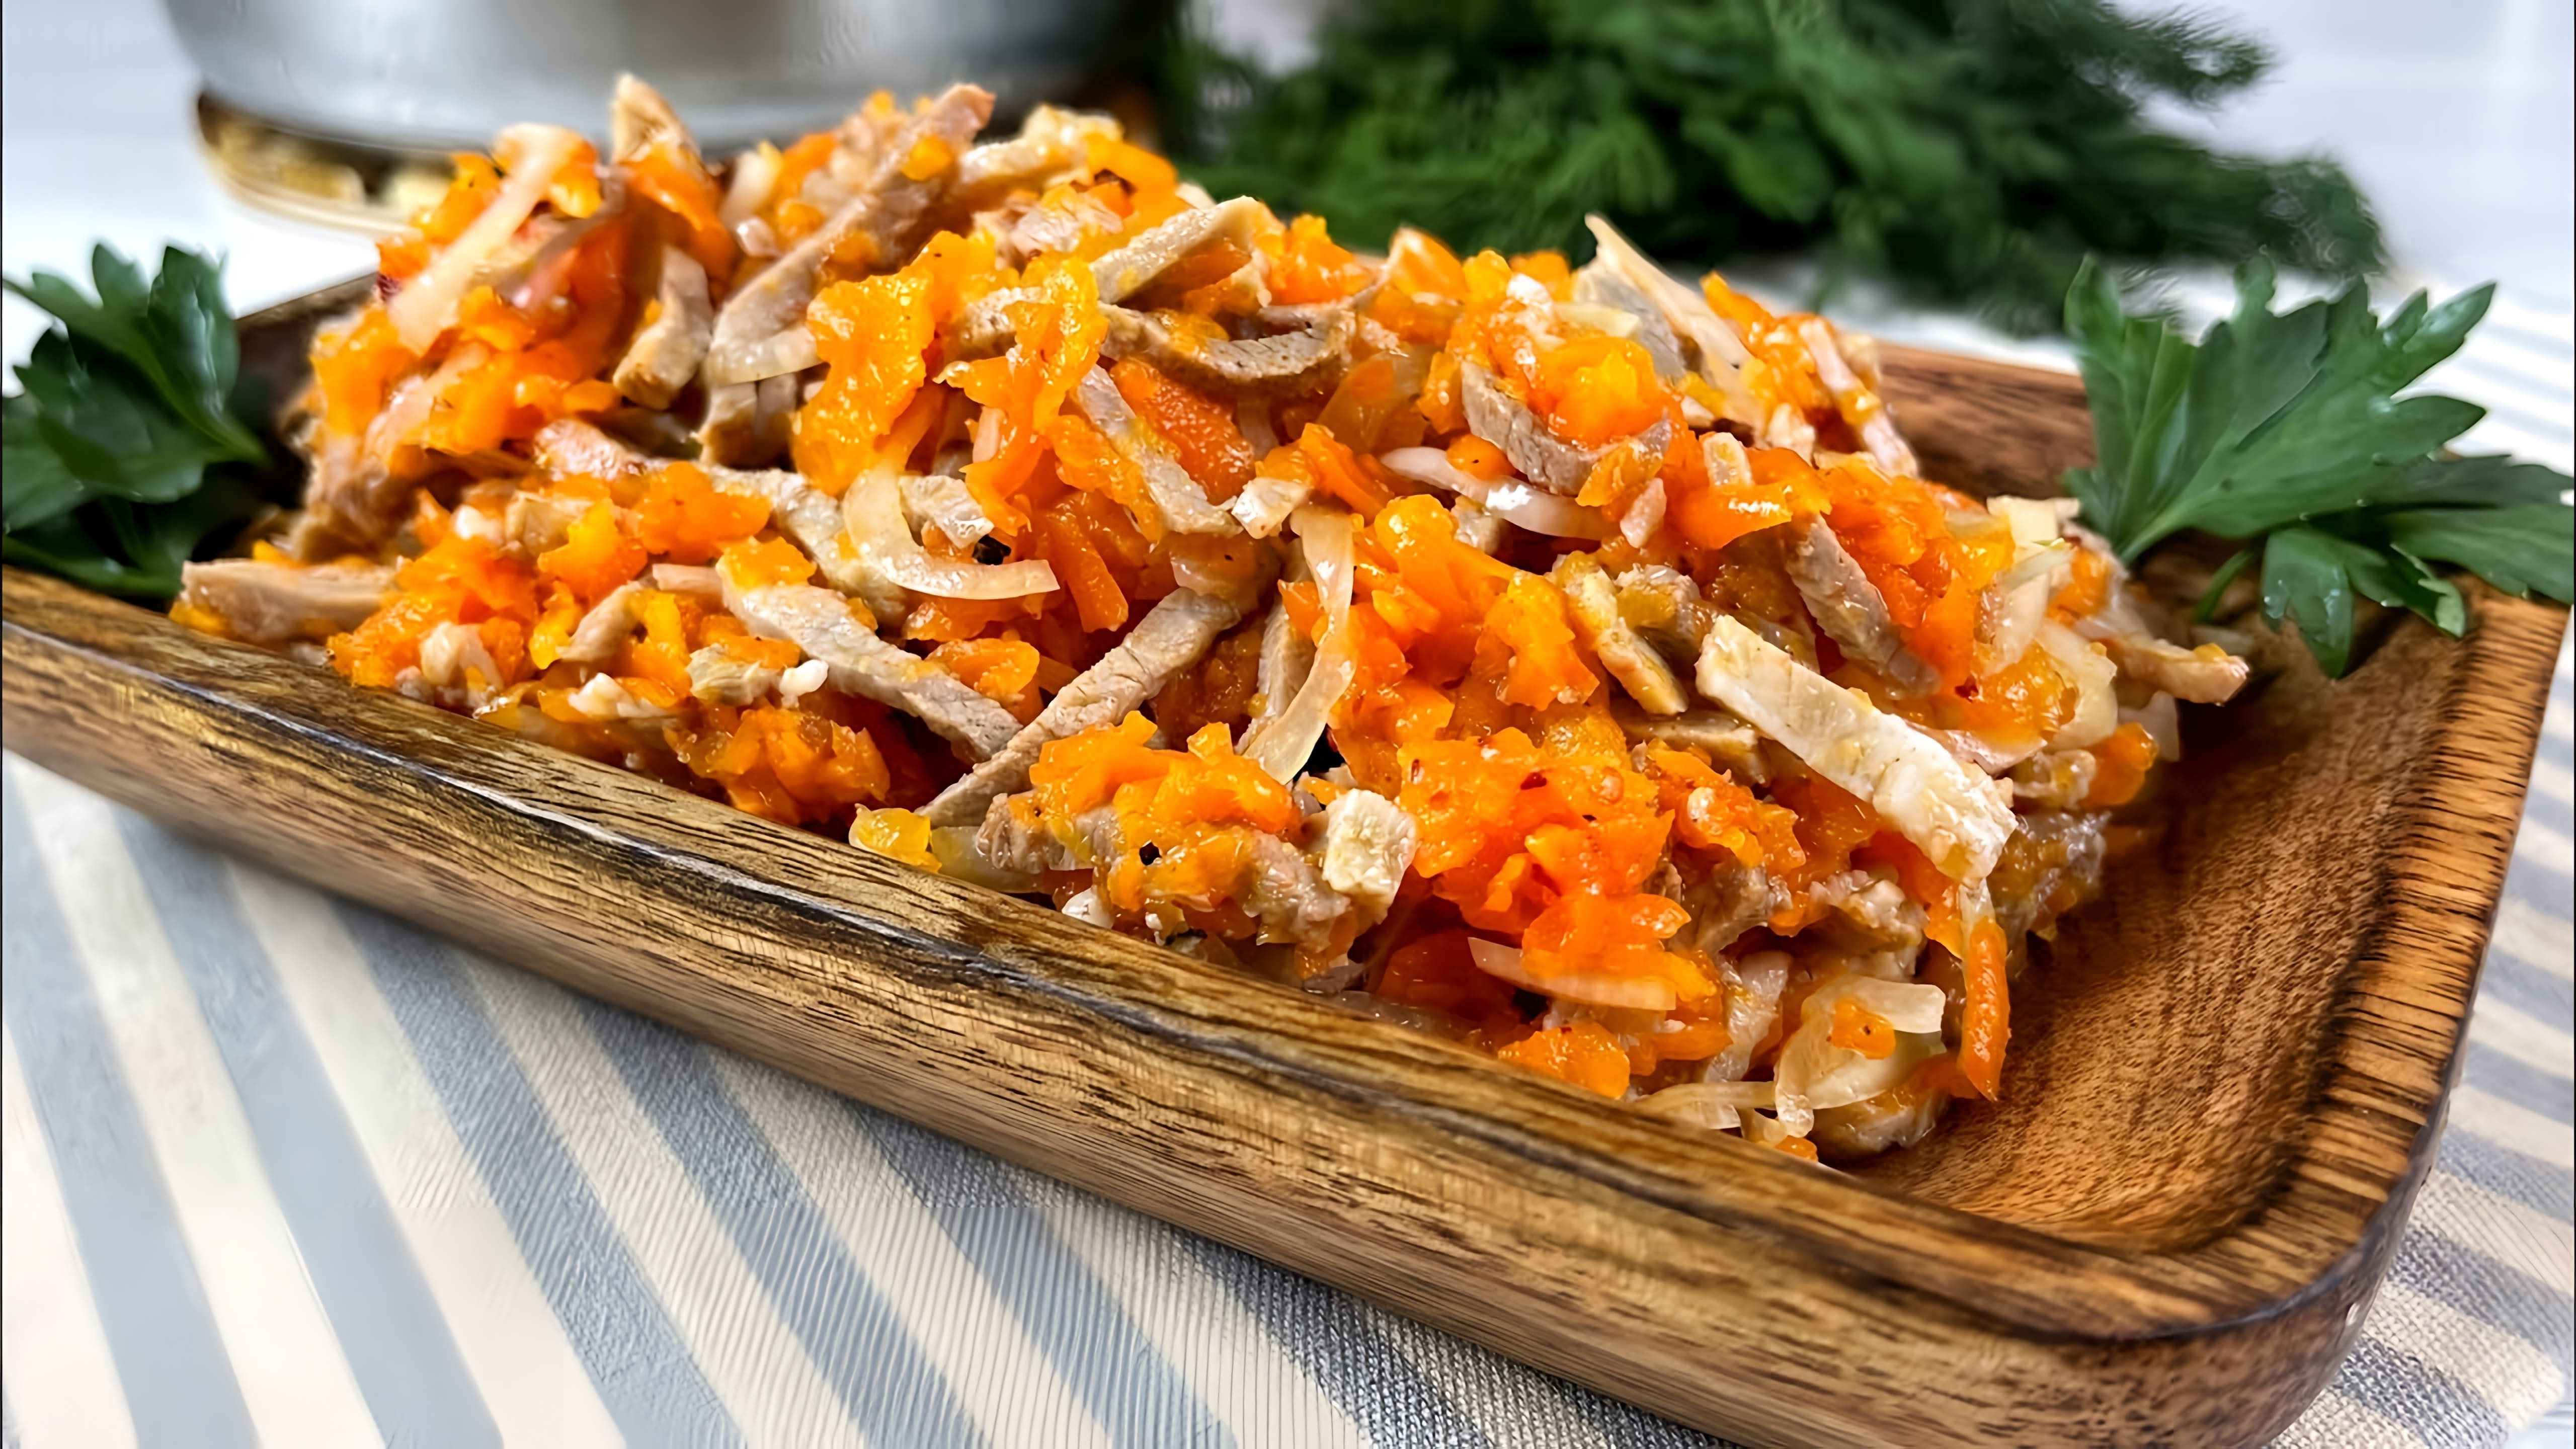 В этом видео демонстрируется процесс приготовления салата-закуски из трех основных ингредиентов: свинины, моркови и репчатого лука